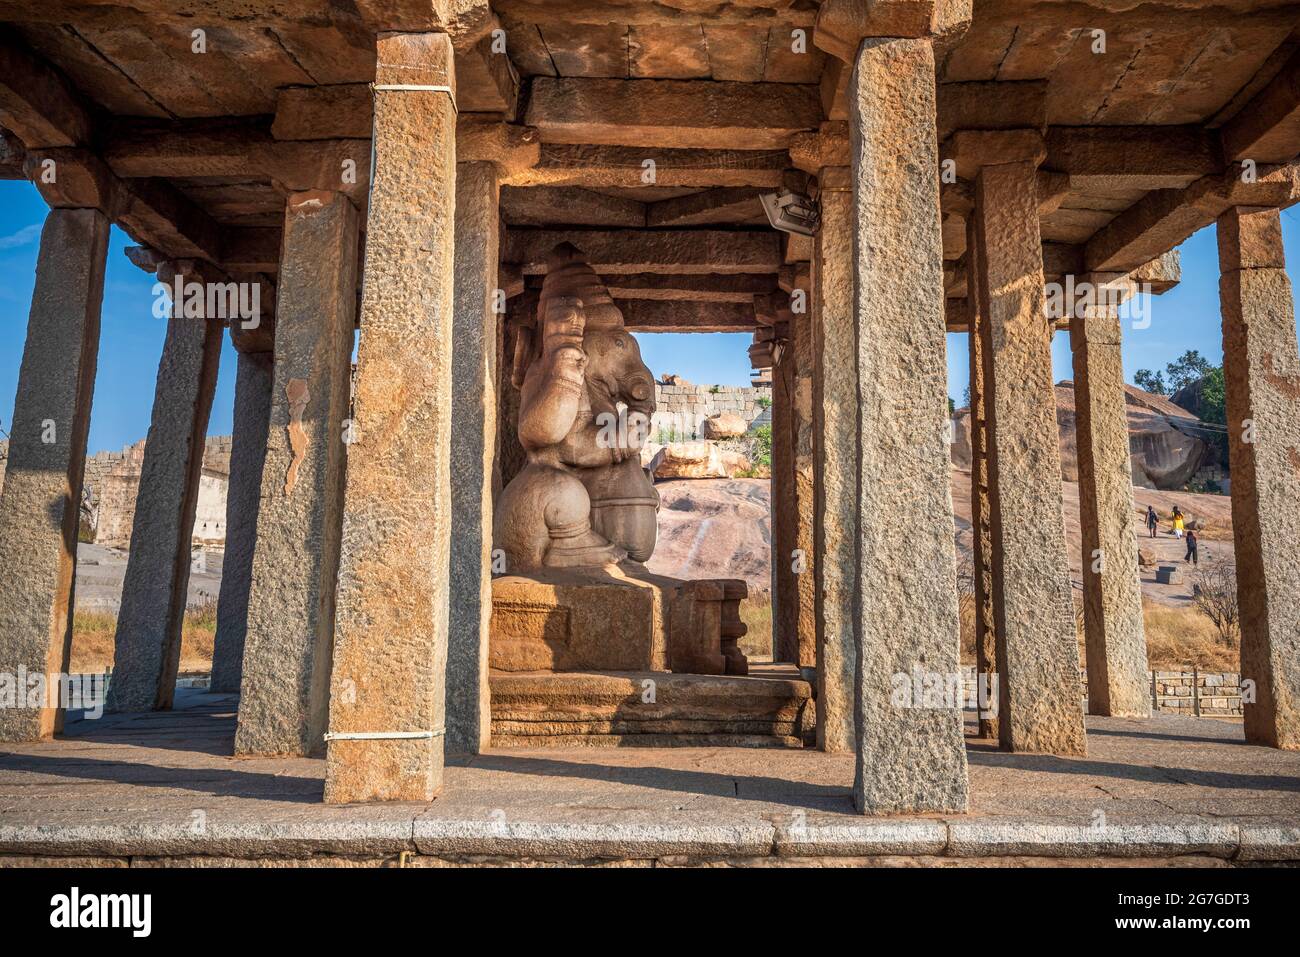 La statue du Seigneur Ganesha construite dans les temps anciens dans le temple de Sasivekalu, Hampi avec le ton de couleur de l'automne. Hampi, Karnataka, Inde Banque D'Images